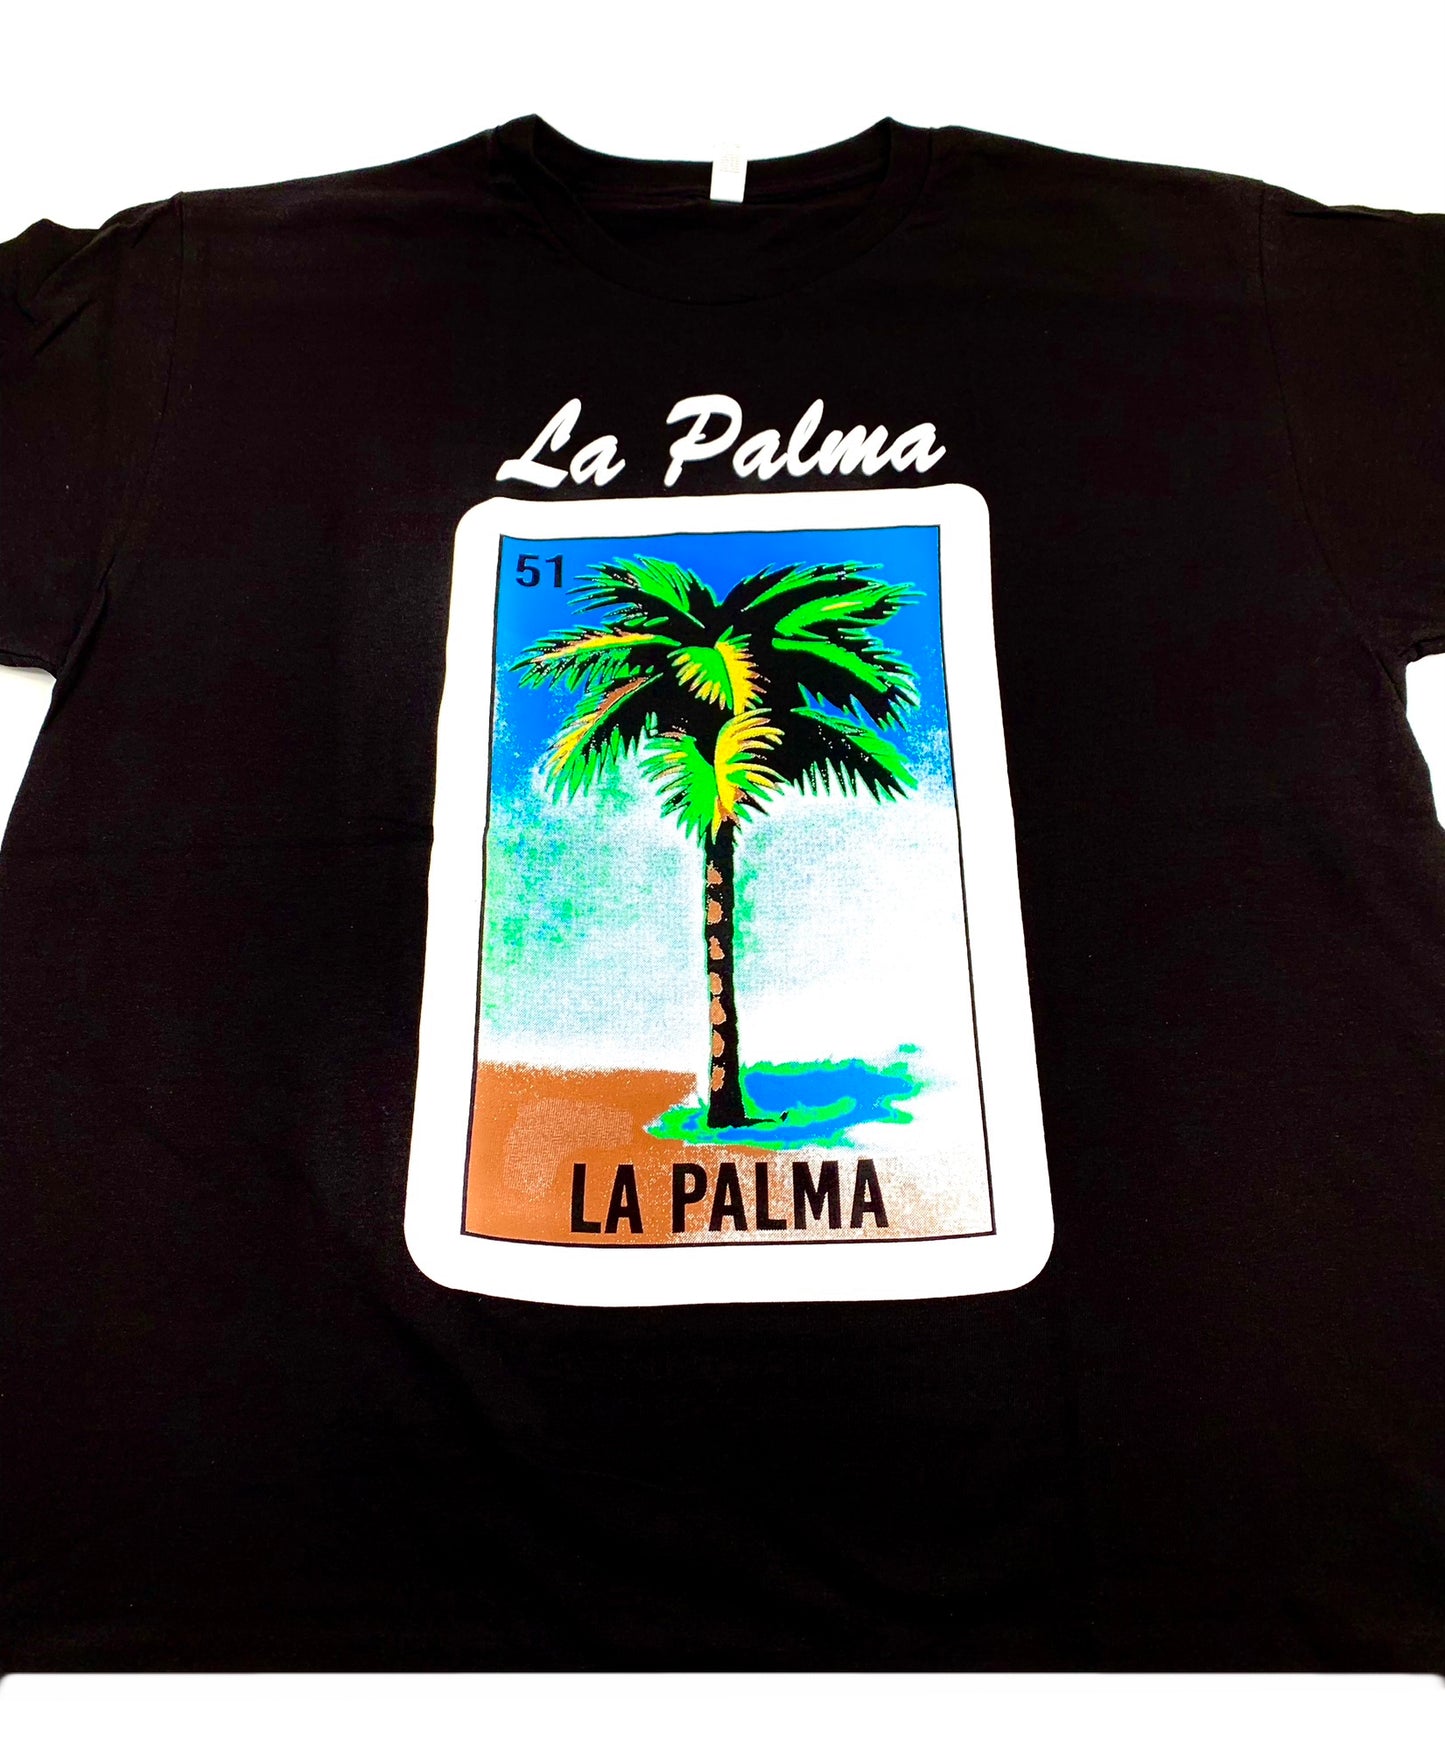 (12ct) Camisetas de La Palma $6.99 c/u